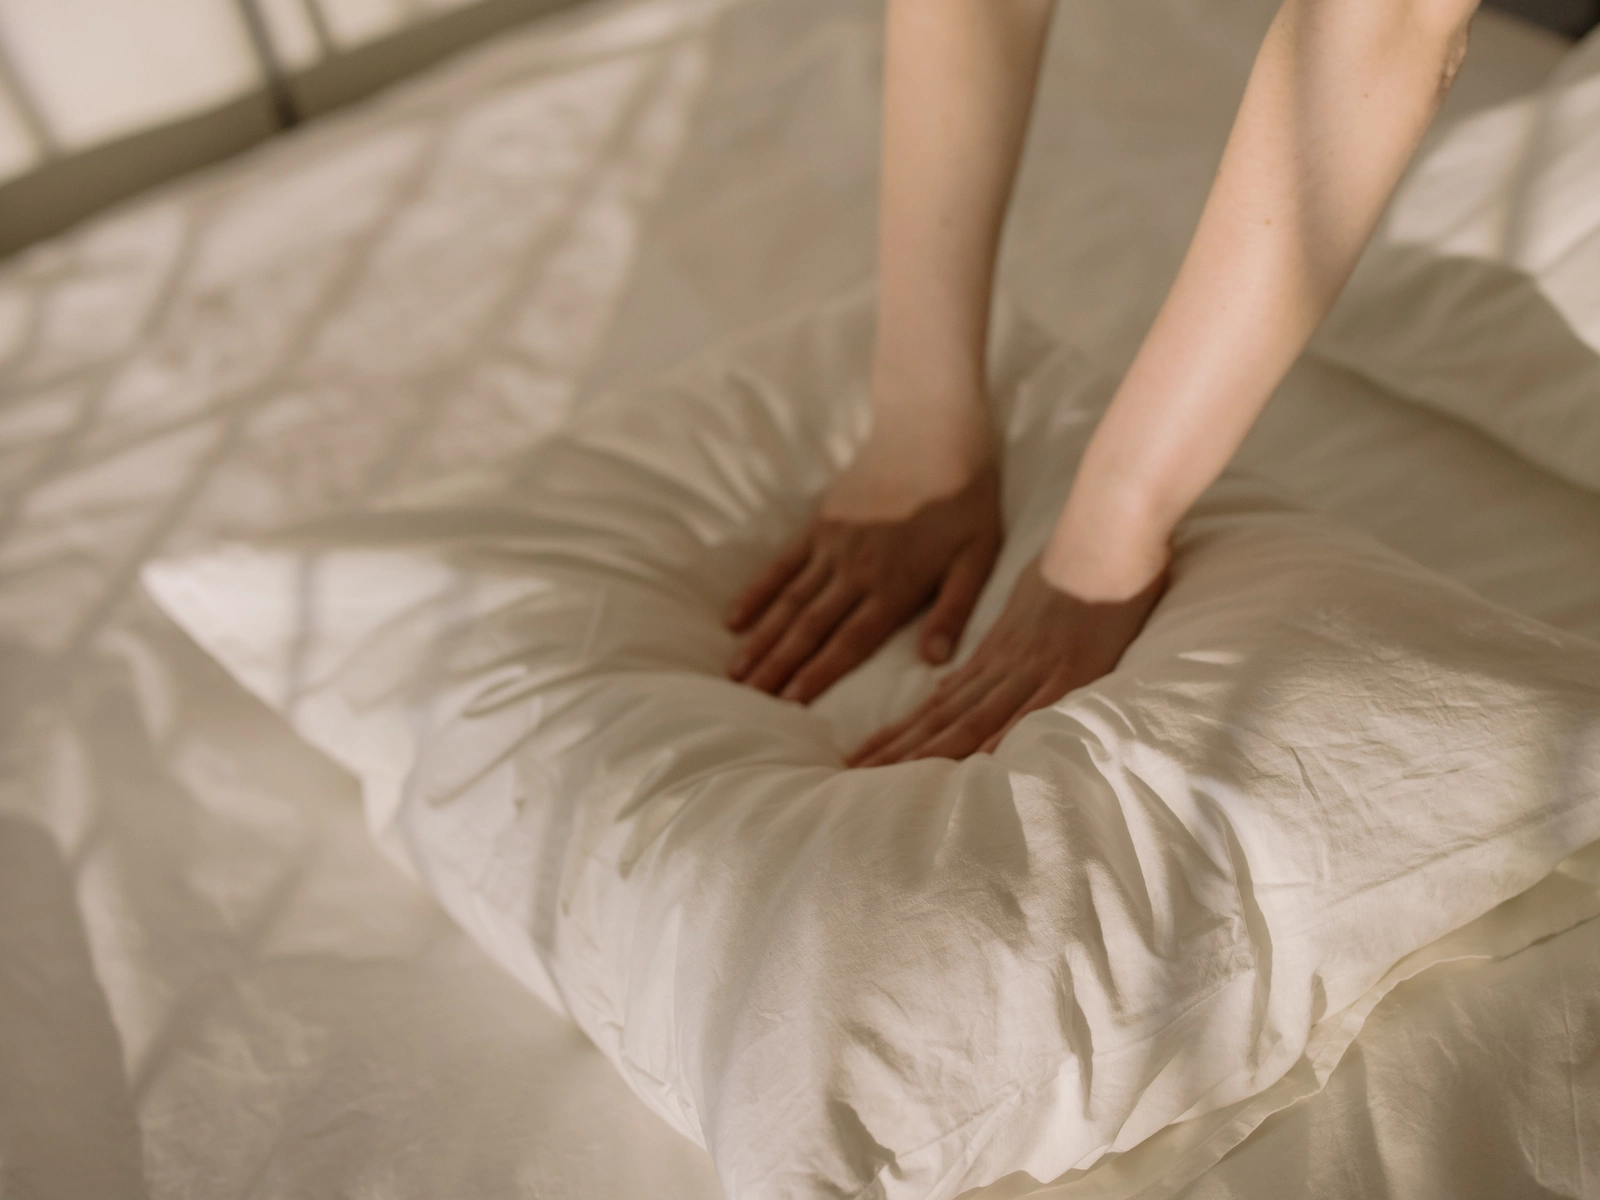 hands flattening a pillow